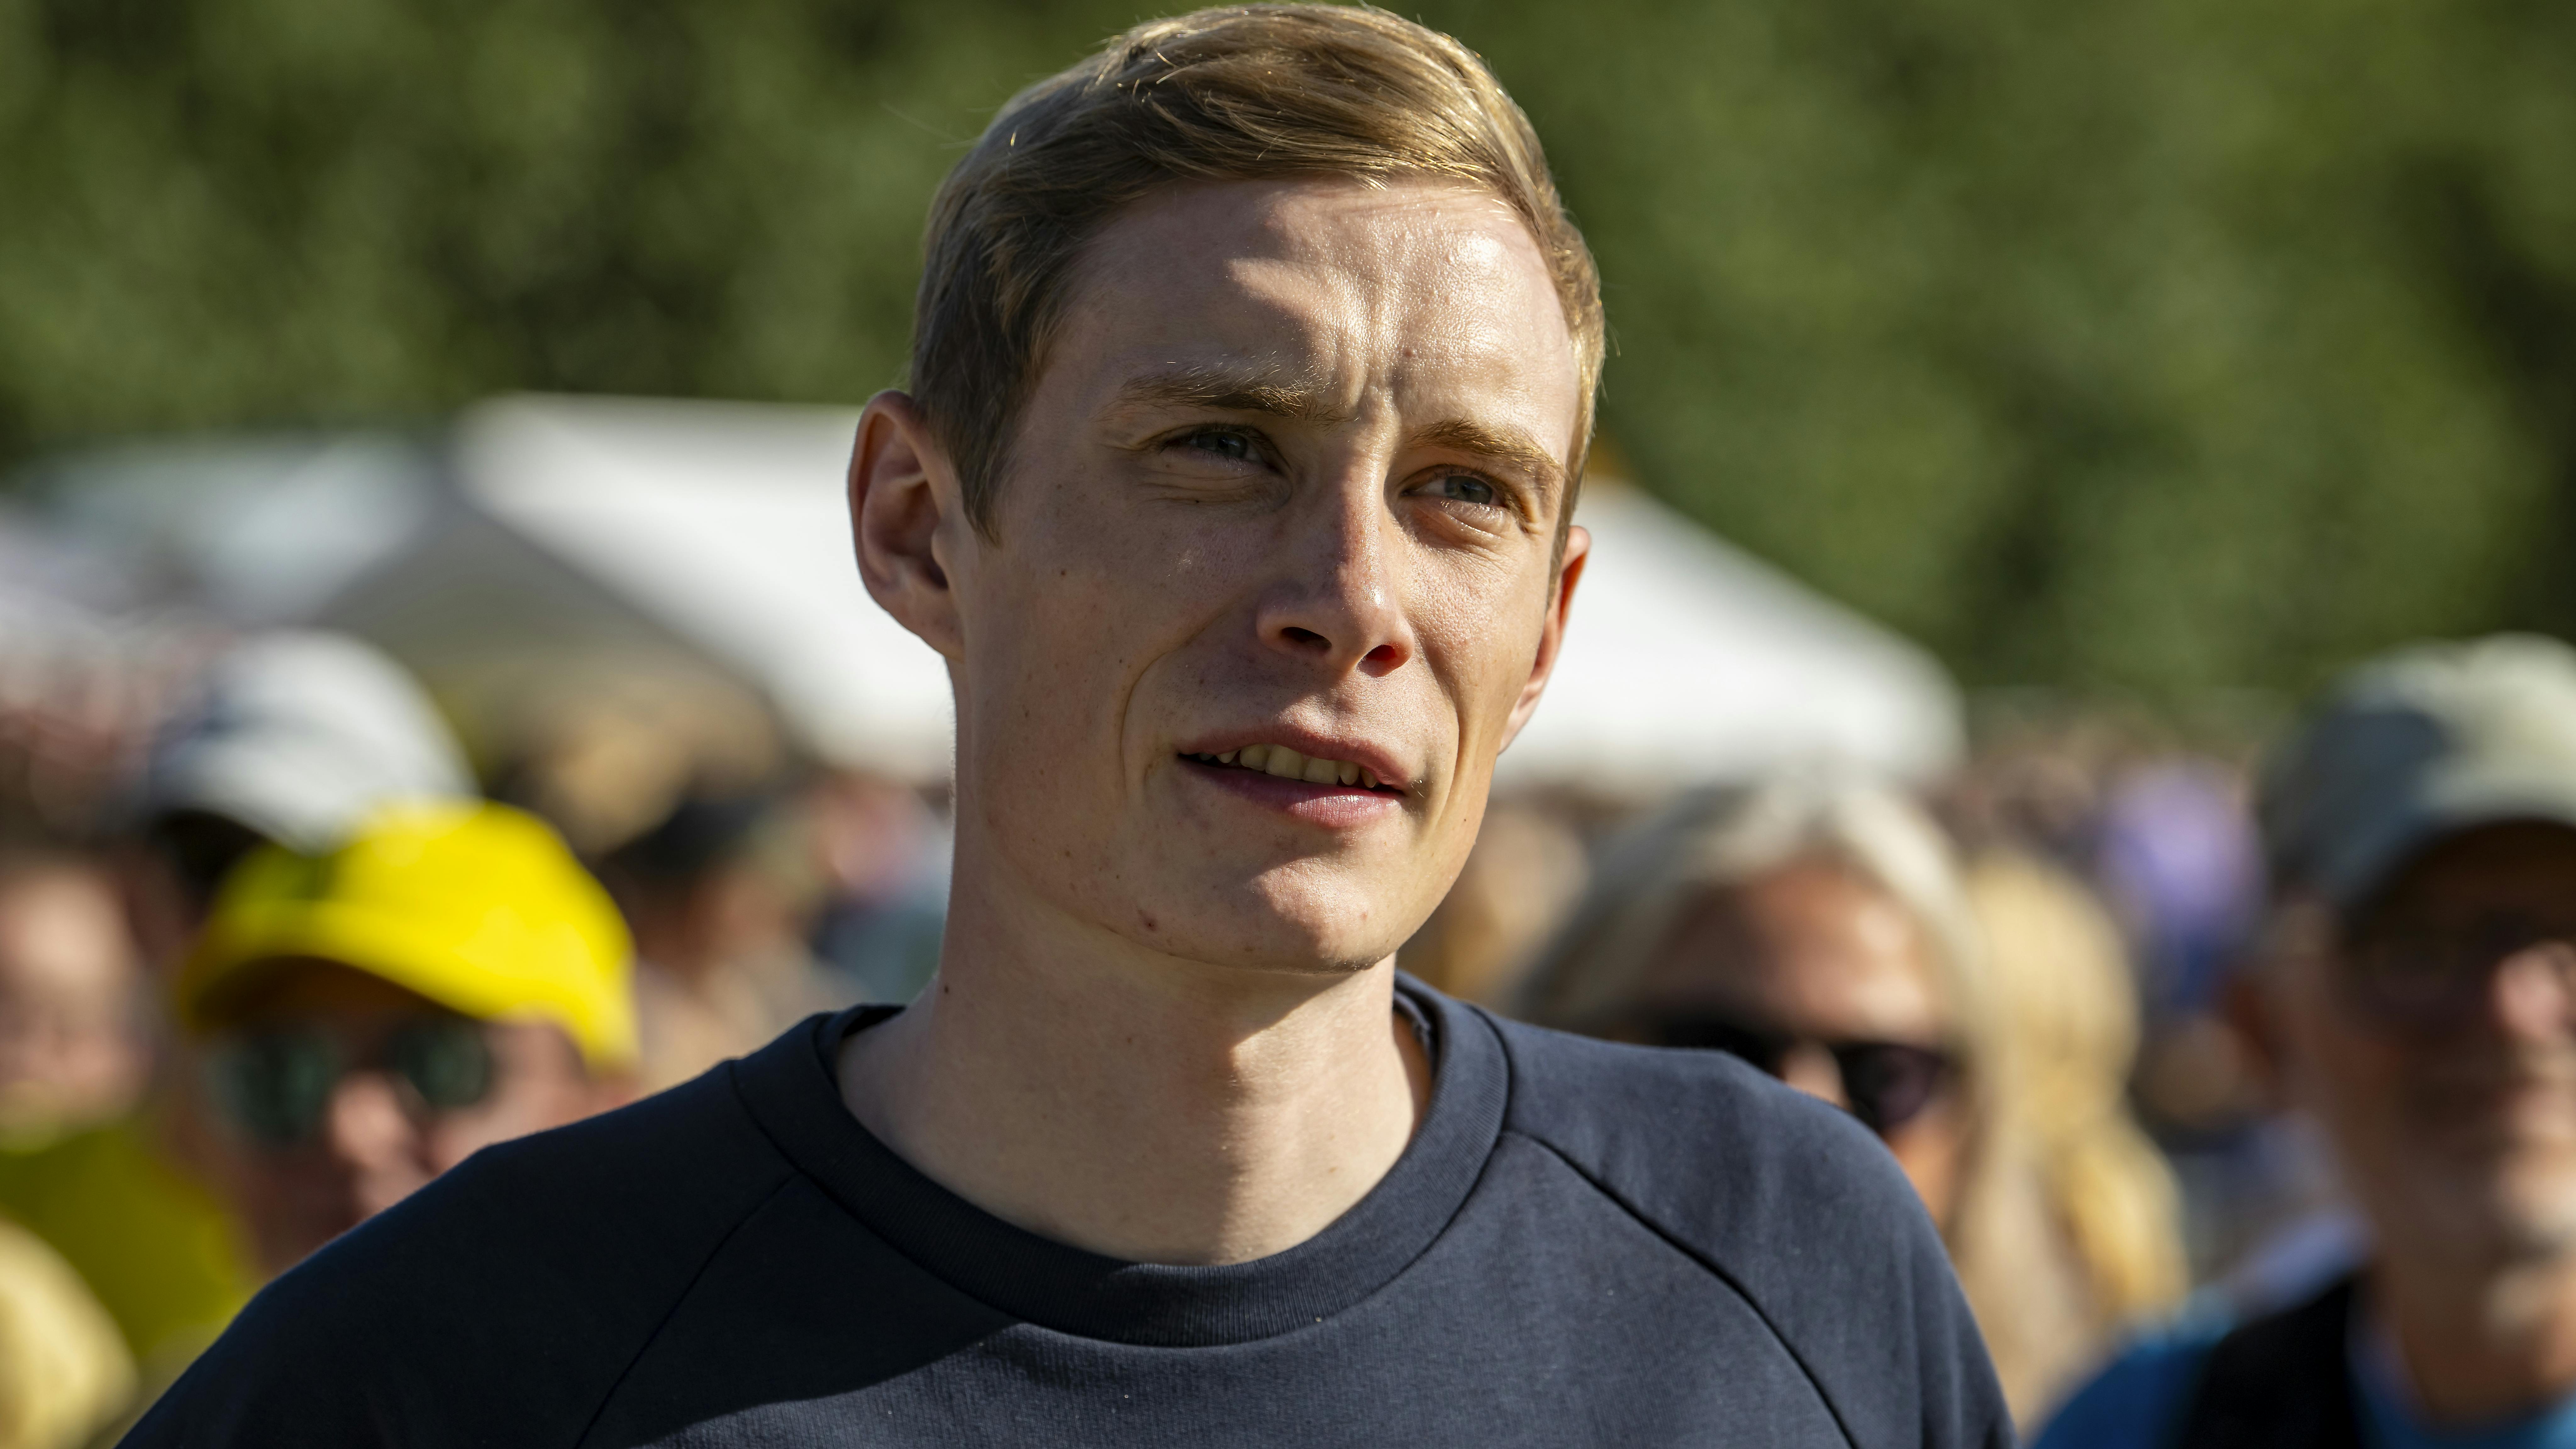 Jonas Vingegaards styrt i Baskerlundet Rundt får nu store konsekvenser for træningen forud for Tour de France. Det fortæller Team Visma-Lease a Bikes sportschef Merijn Zeeman.